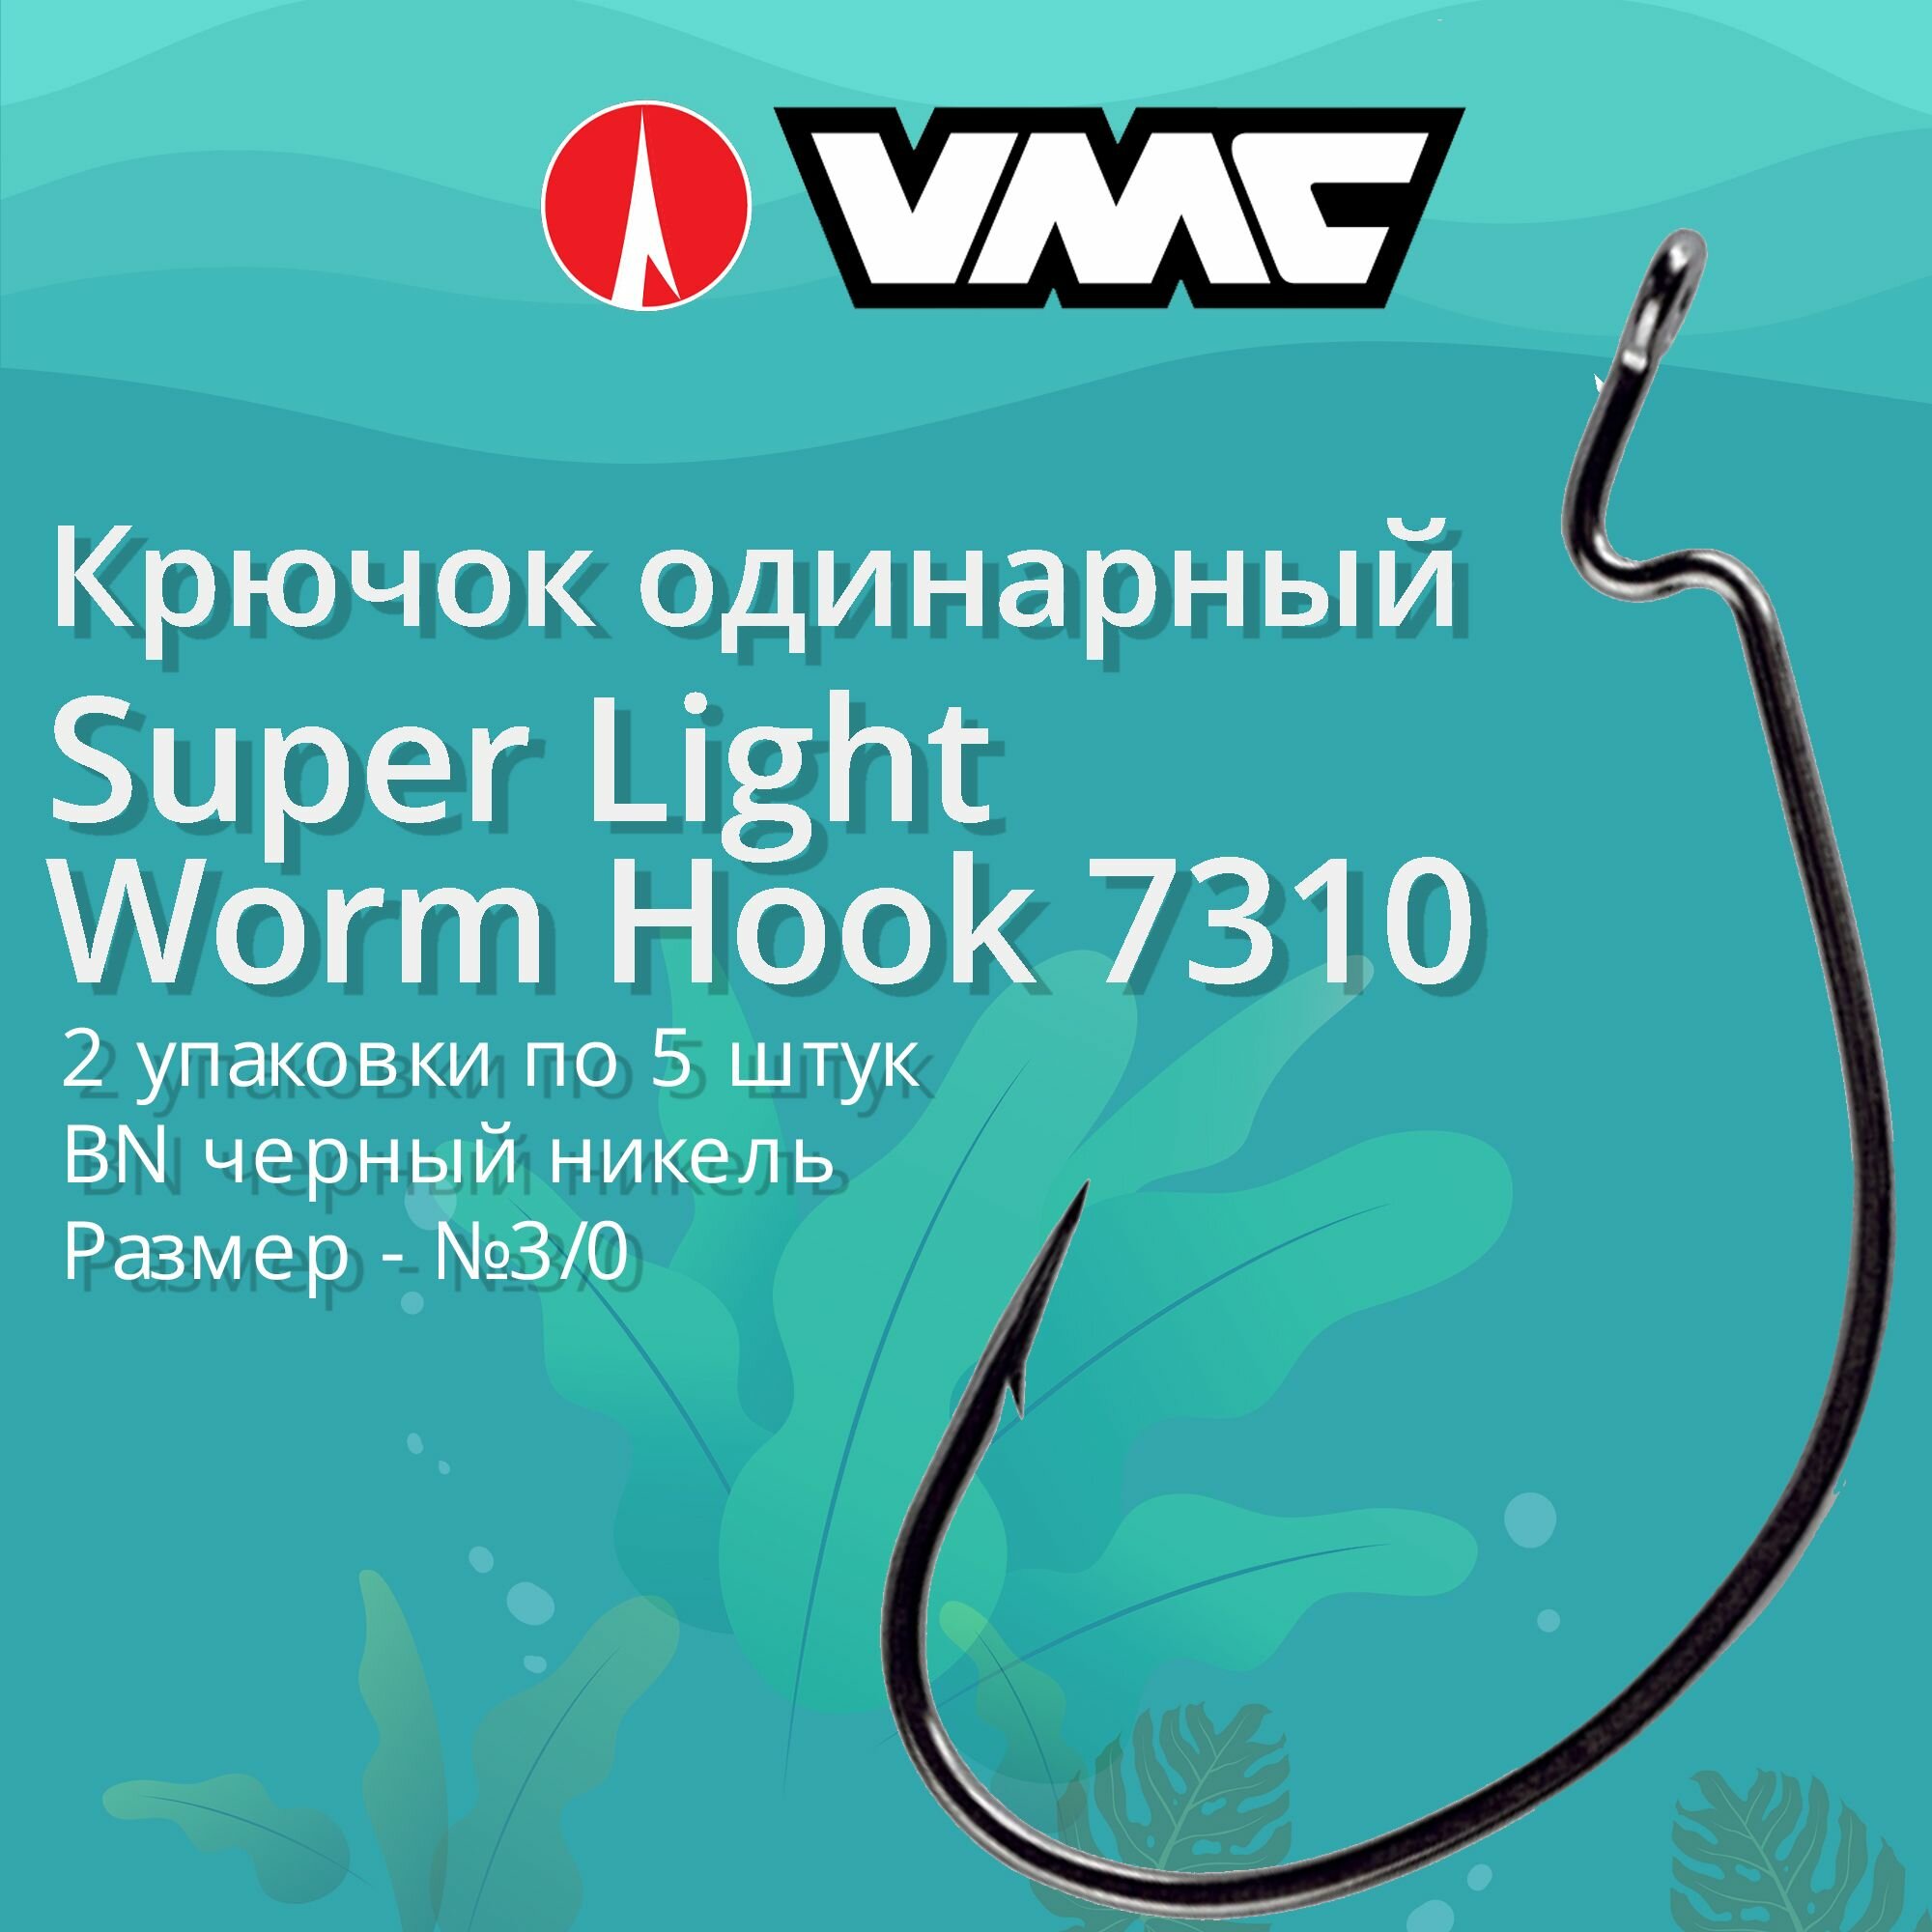 Крючки для рыбалки (одинарный) VMC Super Light Worm Hook офсетный 7310 BN (черн. никель) №3/0 2 упаковки по 5 штук